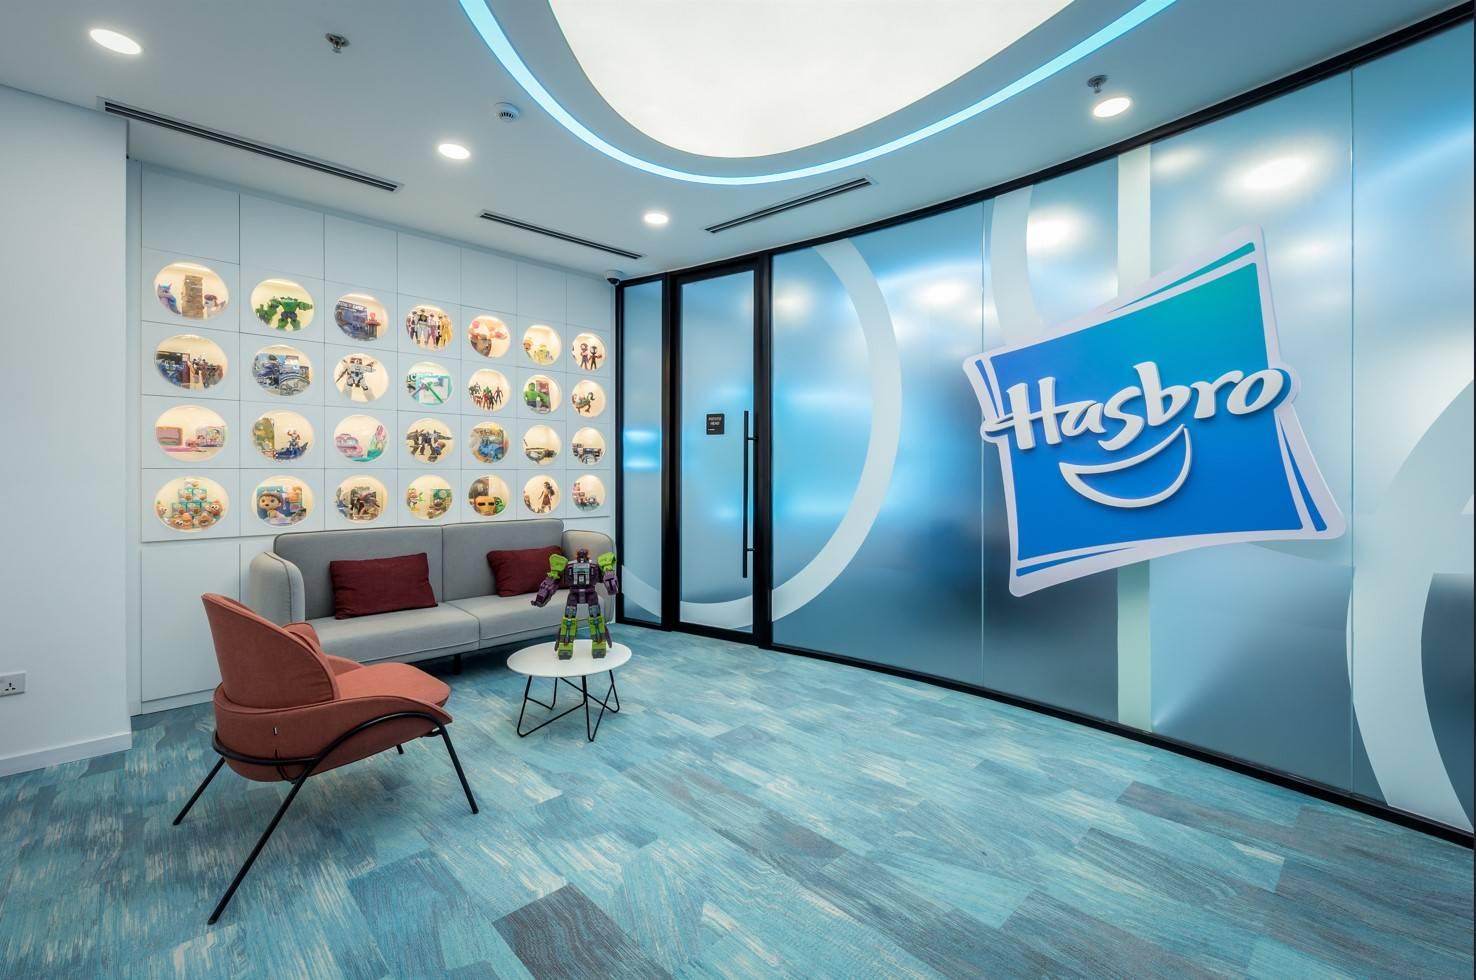 Công Ty TNHH Hasbro Sourcing & Operations Việt Nam tuyển dụng - Tìm việc mới nhất, lương thưởng hấp dẫn.